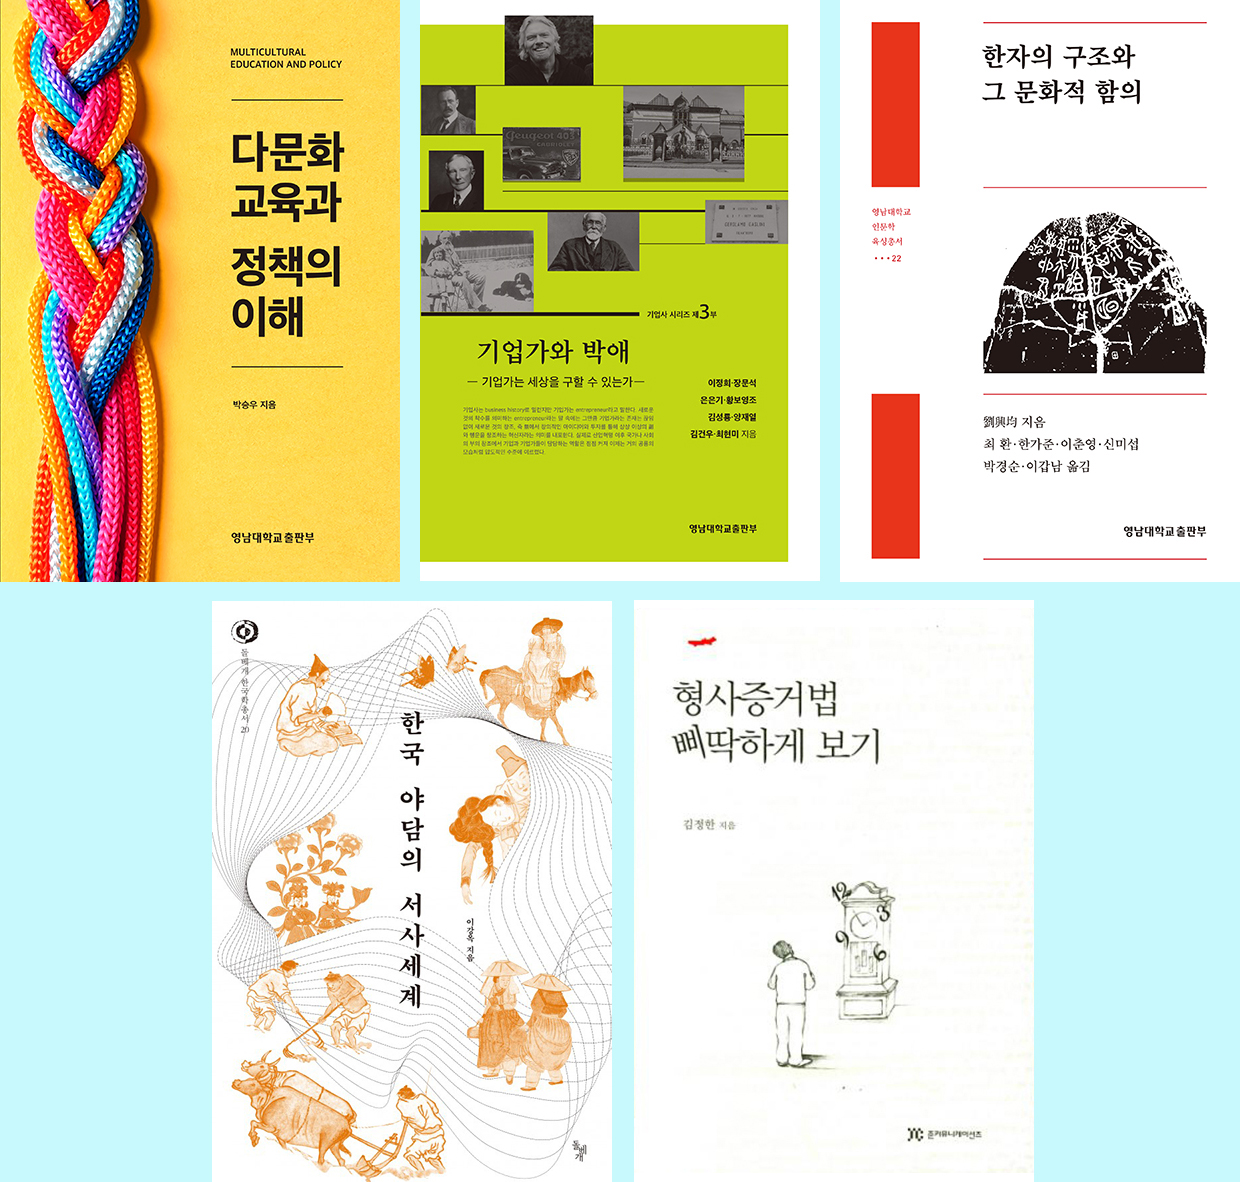 영남대 발간 도서 5종 ‘세종도서’ 학술부문 선정